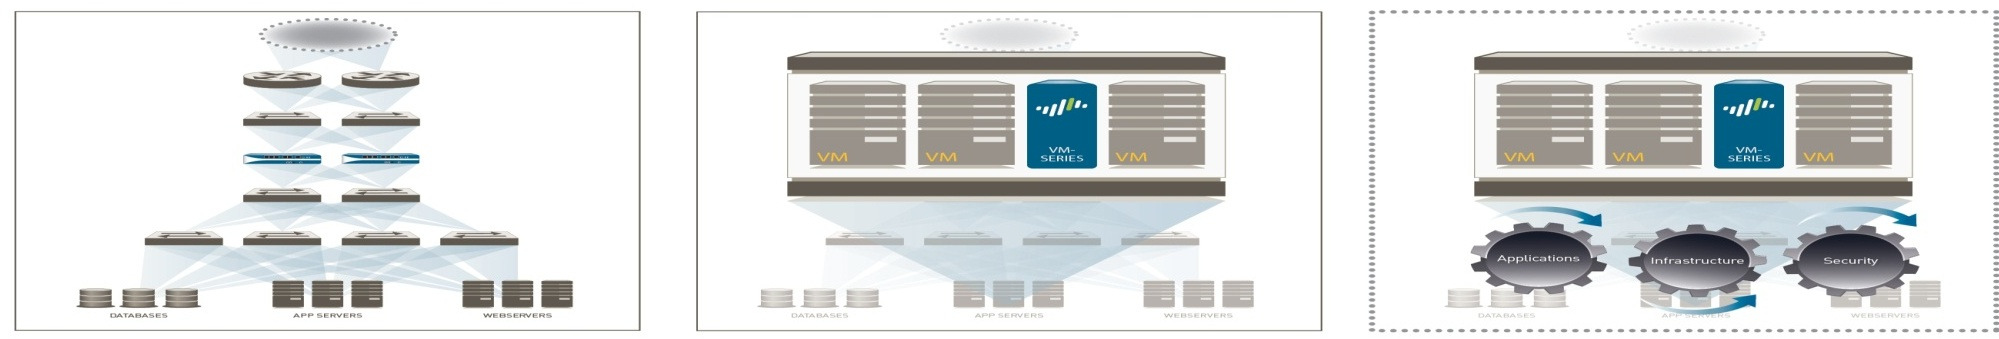 Data Center wird zum Enterprise Cloud Network Traditional Data Center Dedicated application servers Server